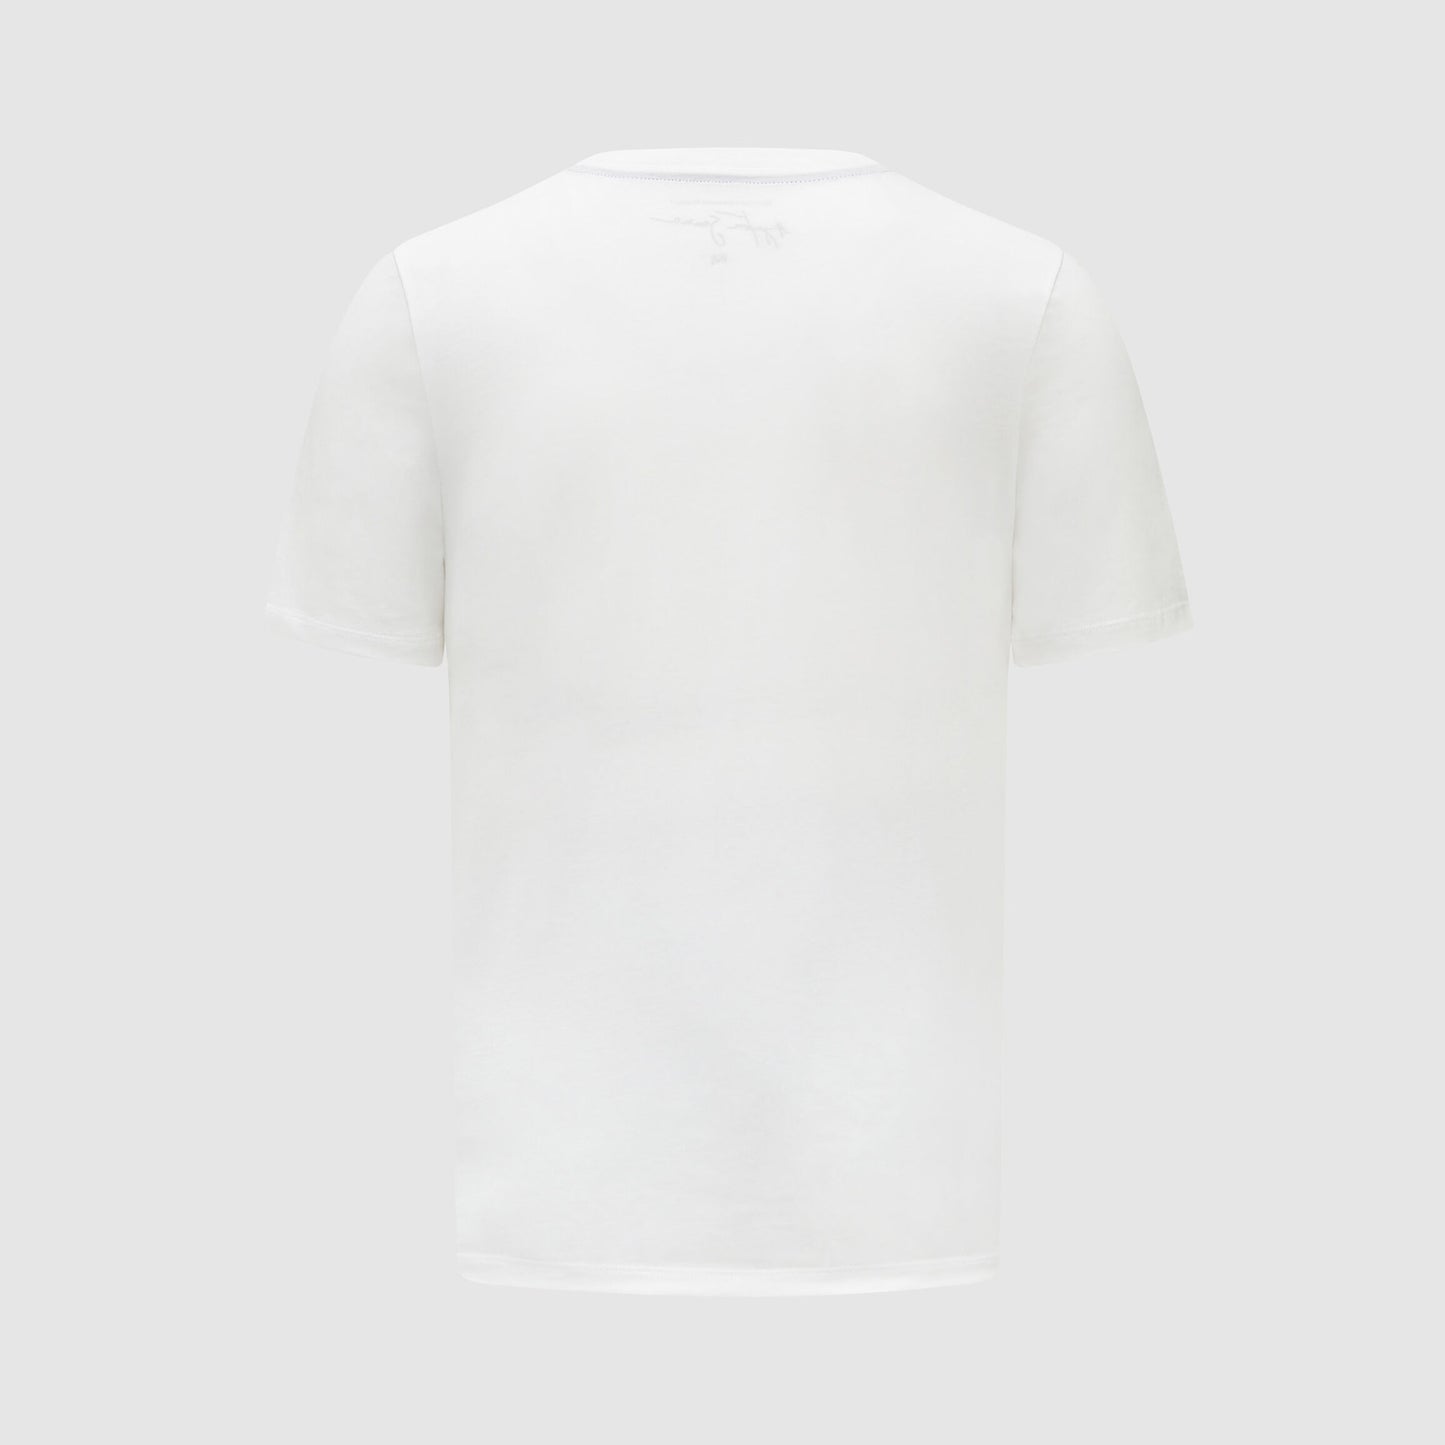 [Pre-Order] Ayrton Senna Busque T-shirt (2 Colors) 